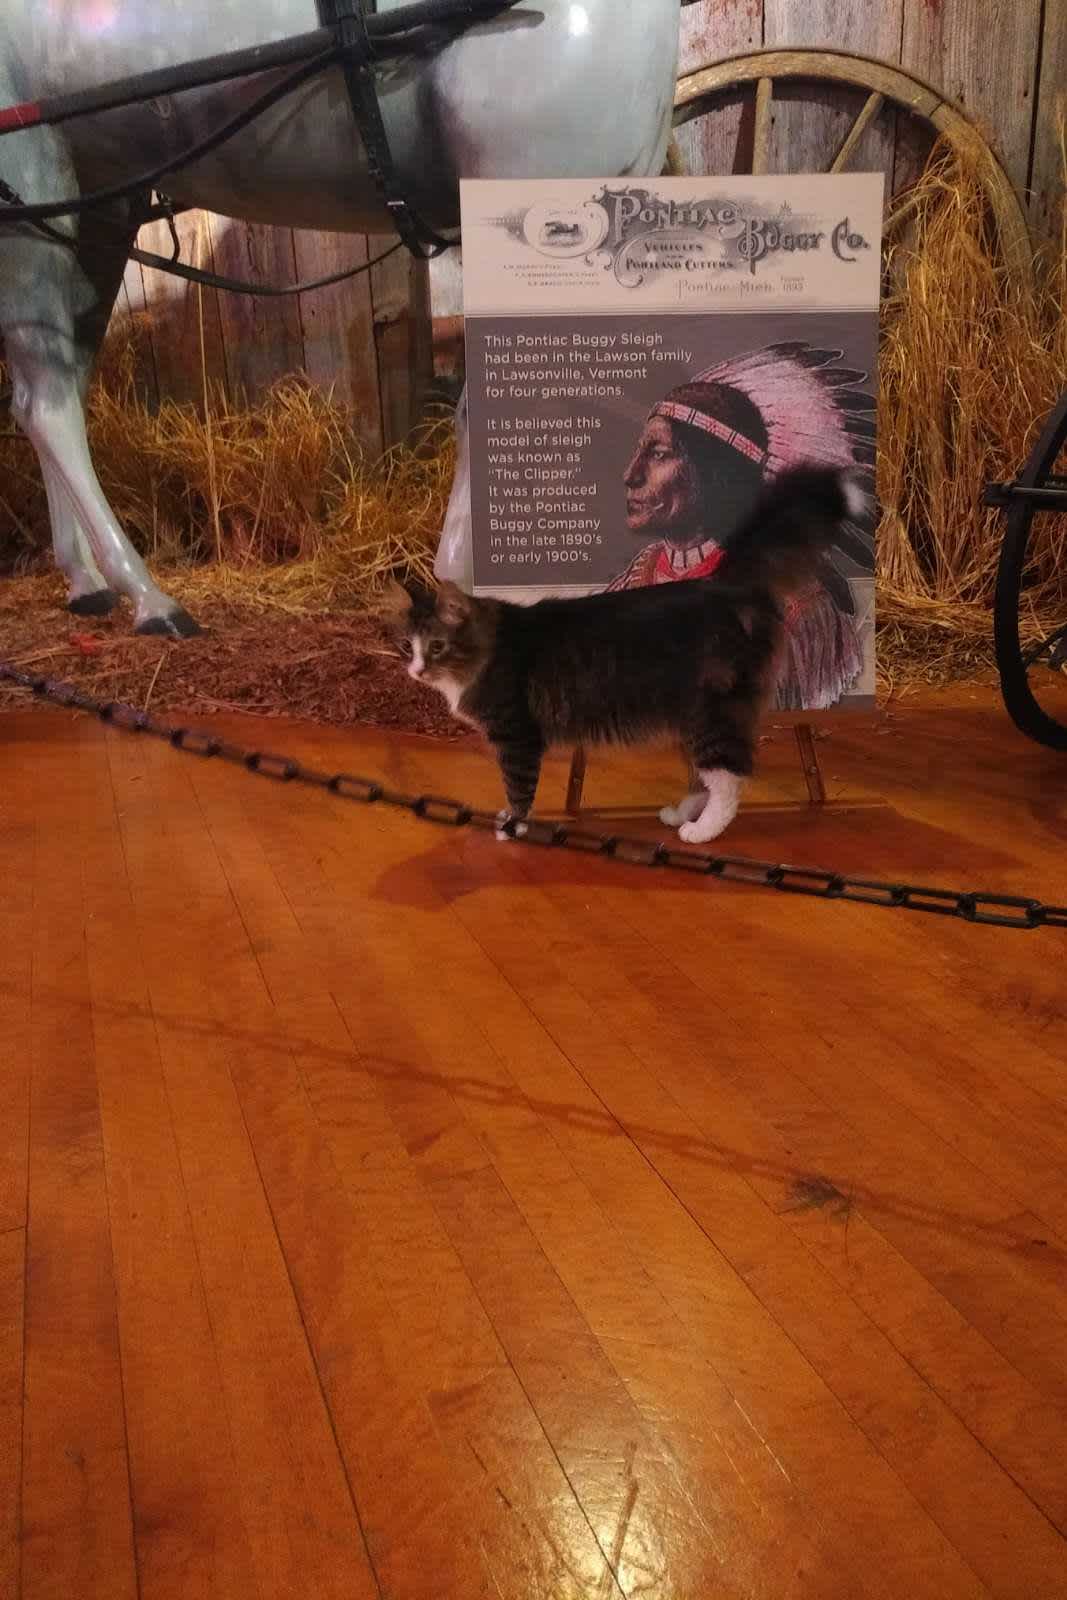 A taki kotecek oprowadzał nas po Muzeum Pontiaca.